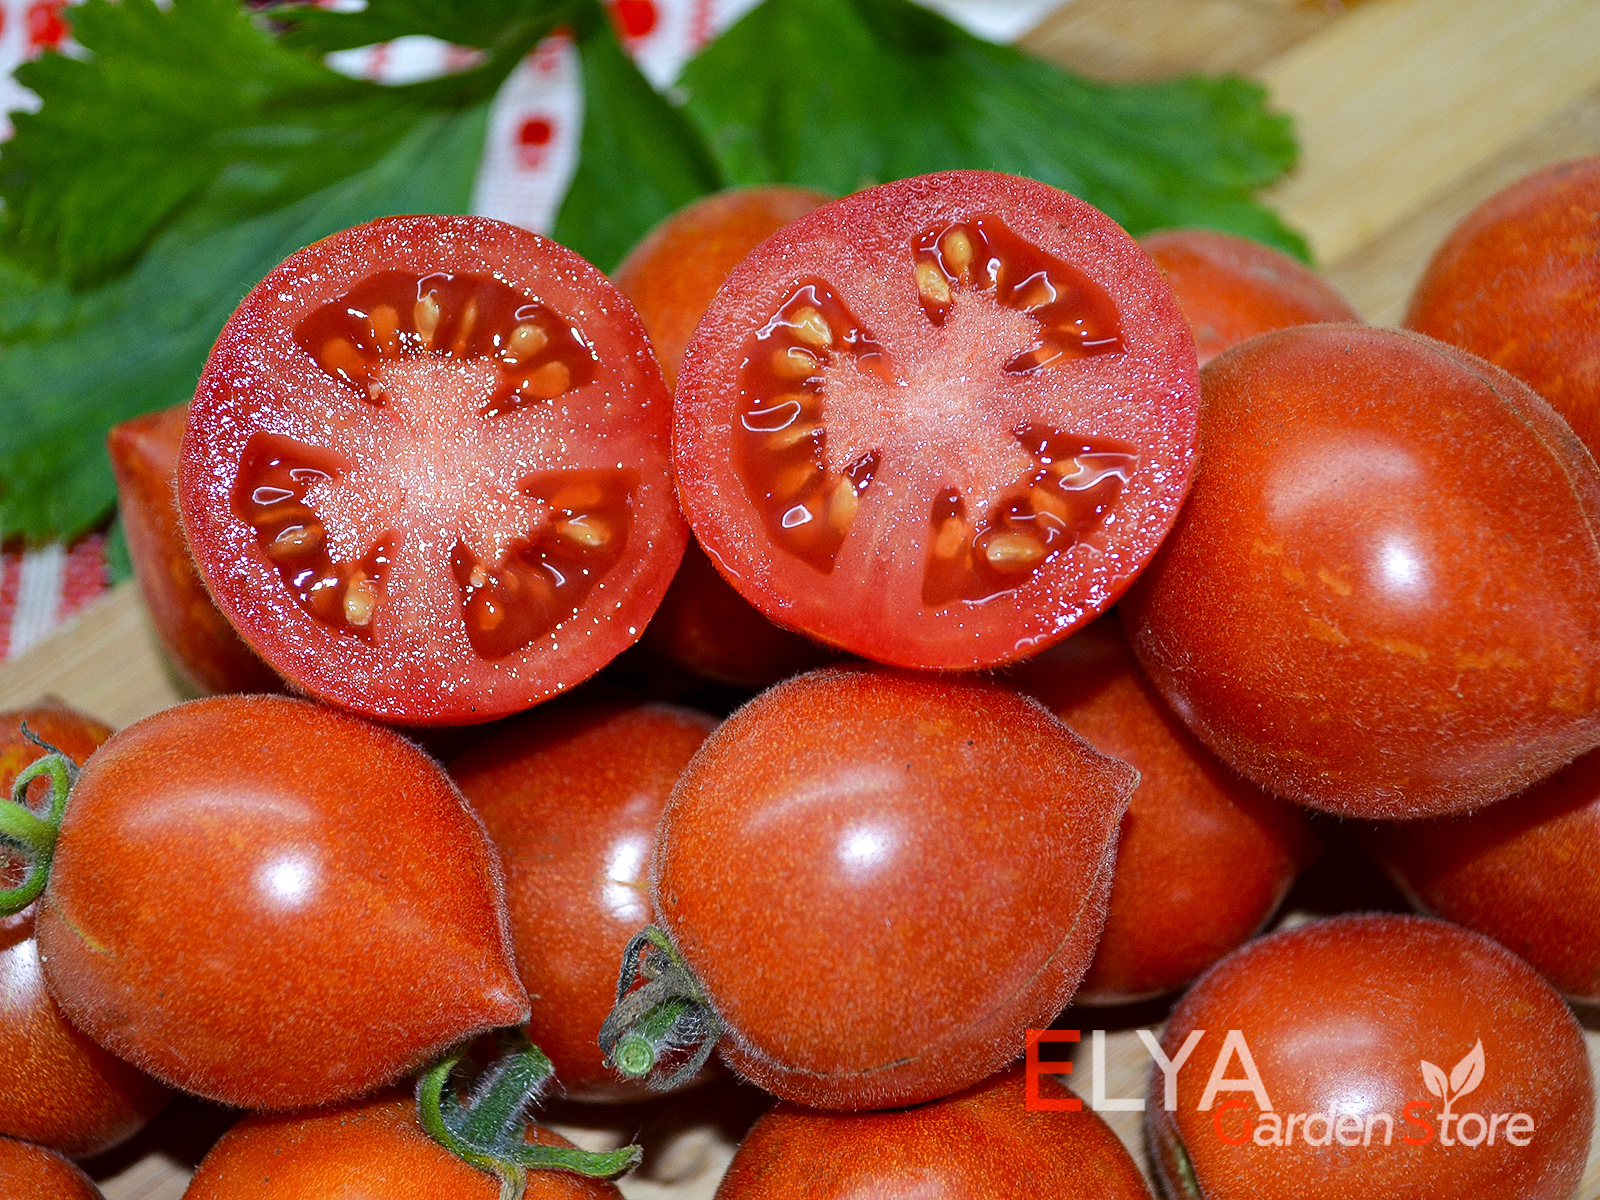 Фузи Вузи - ранний детерминантный коллекционный сорт томата в магазине Elya Garden 